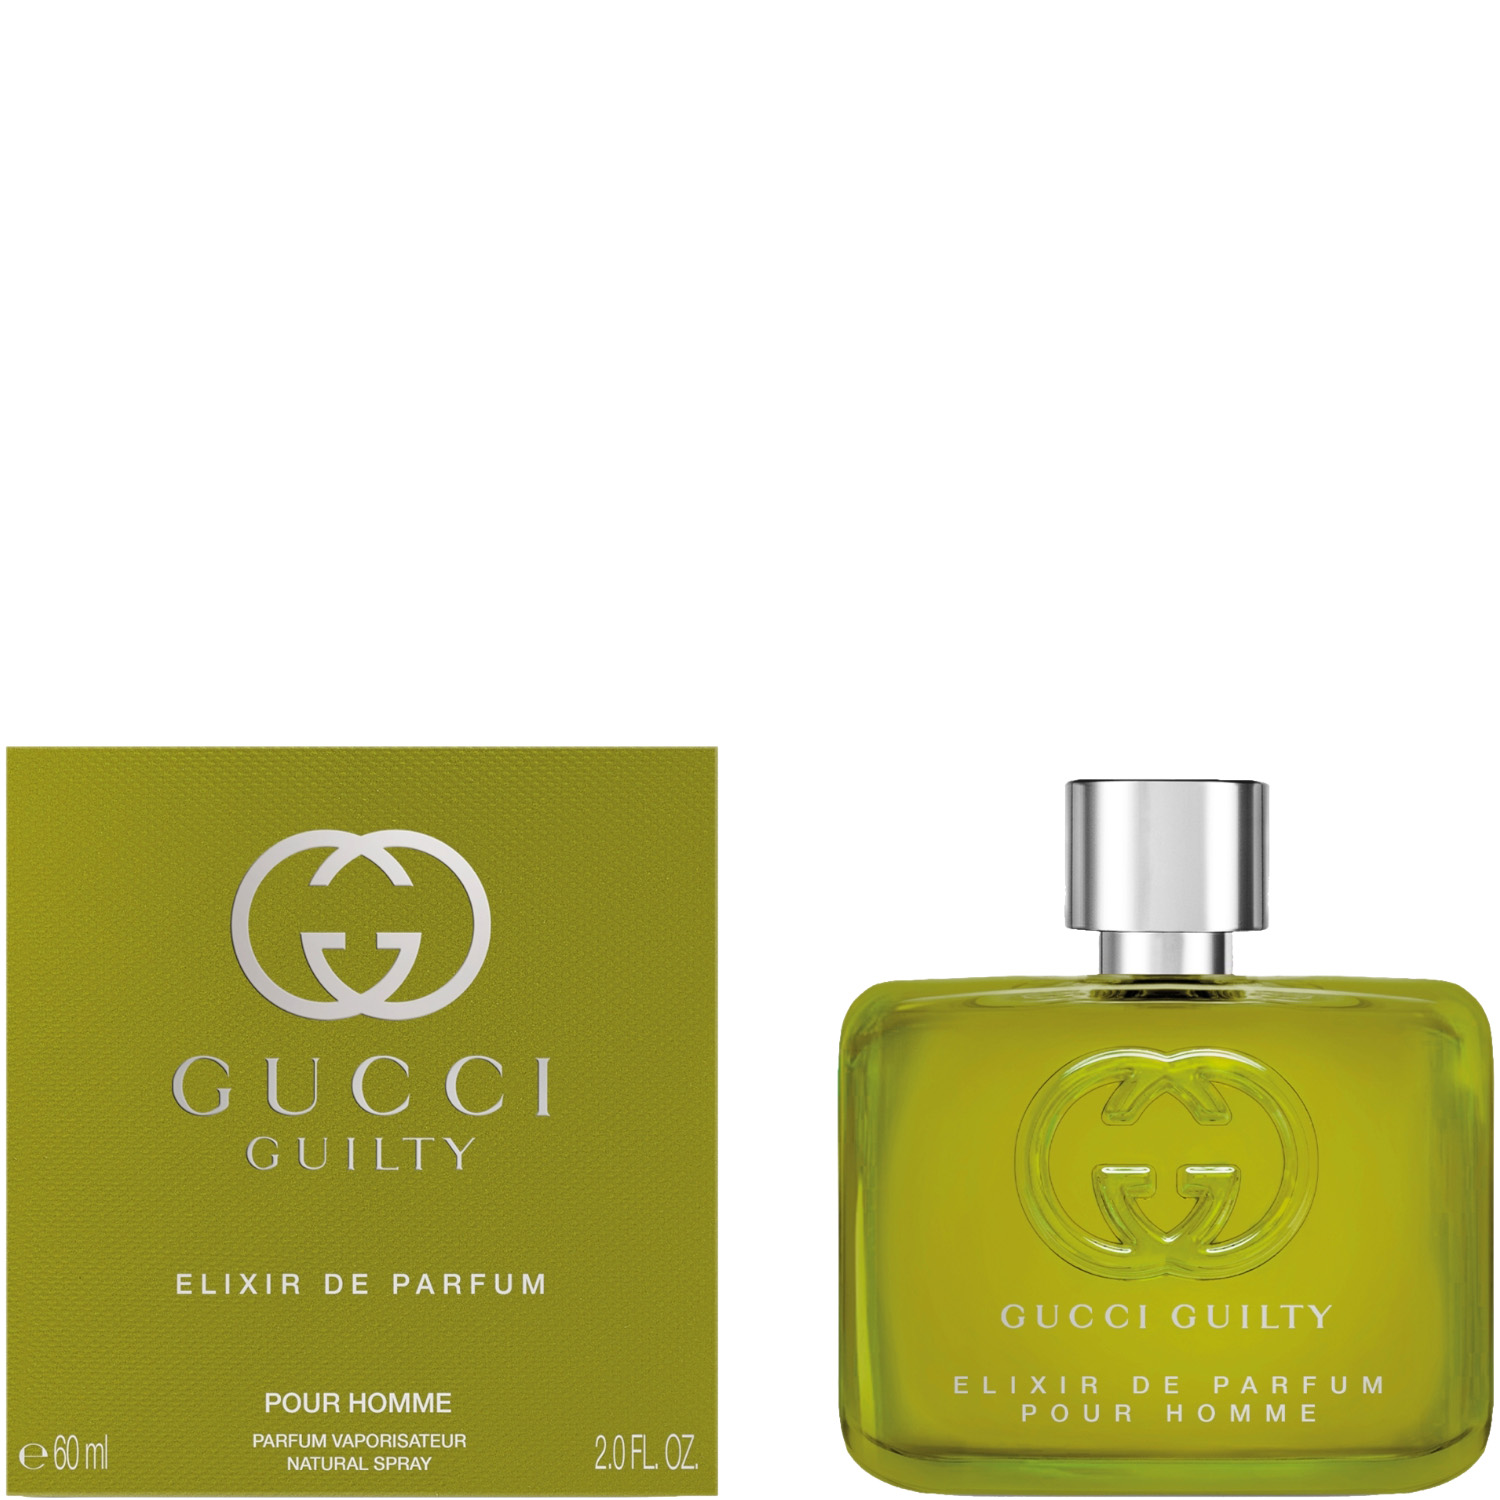 Gucci Guilty Elixir de Parfum Pour Homme 60ml